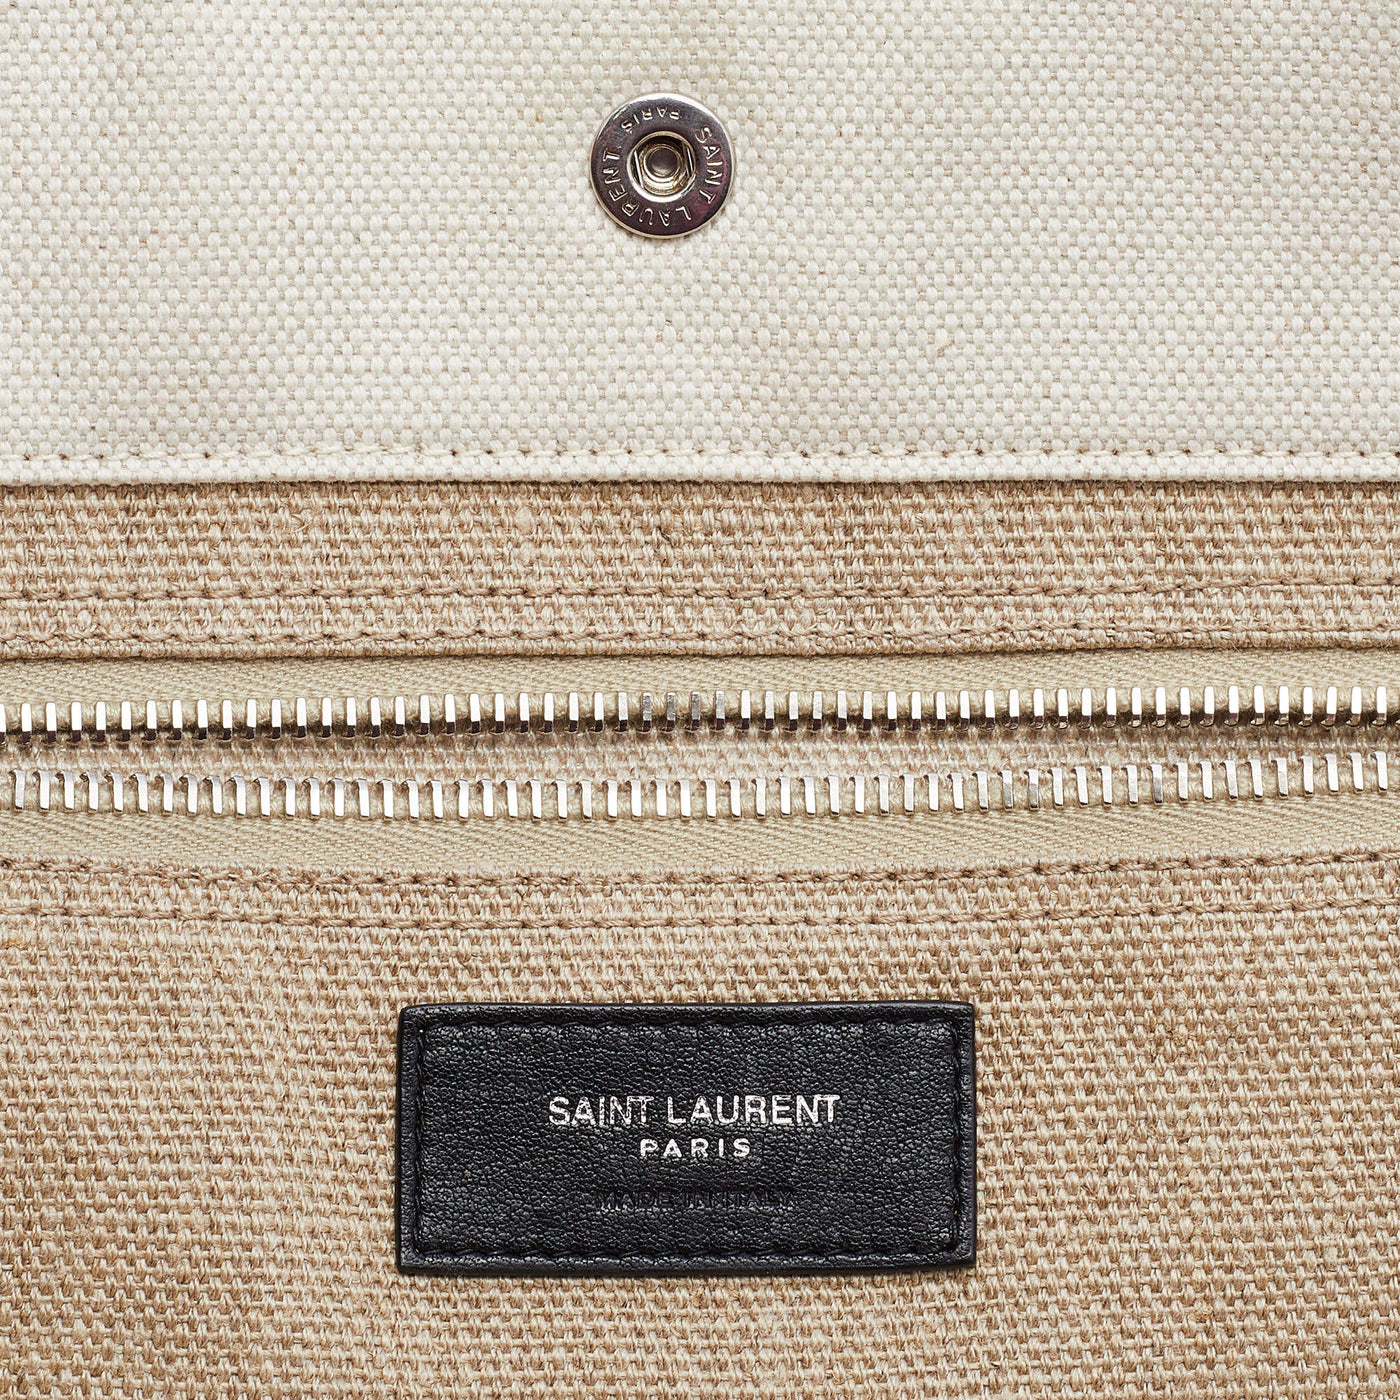 Saint Laurent Beige/Black Linen and Leather Rive Gauche Shopper Tote Bag